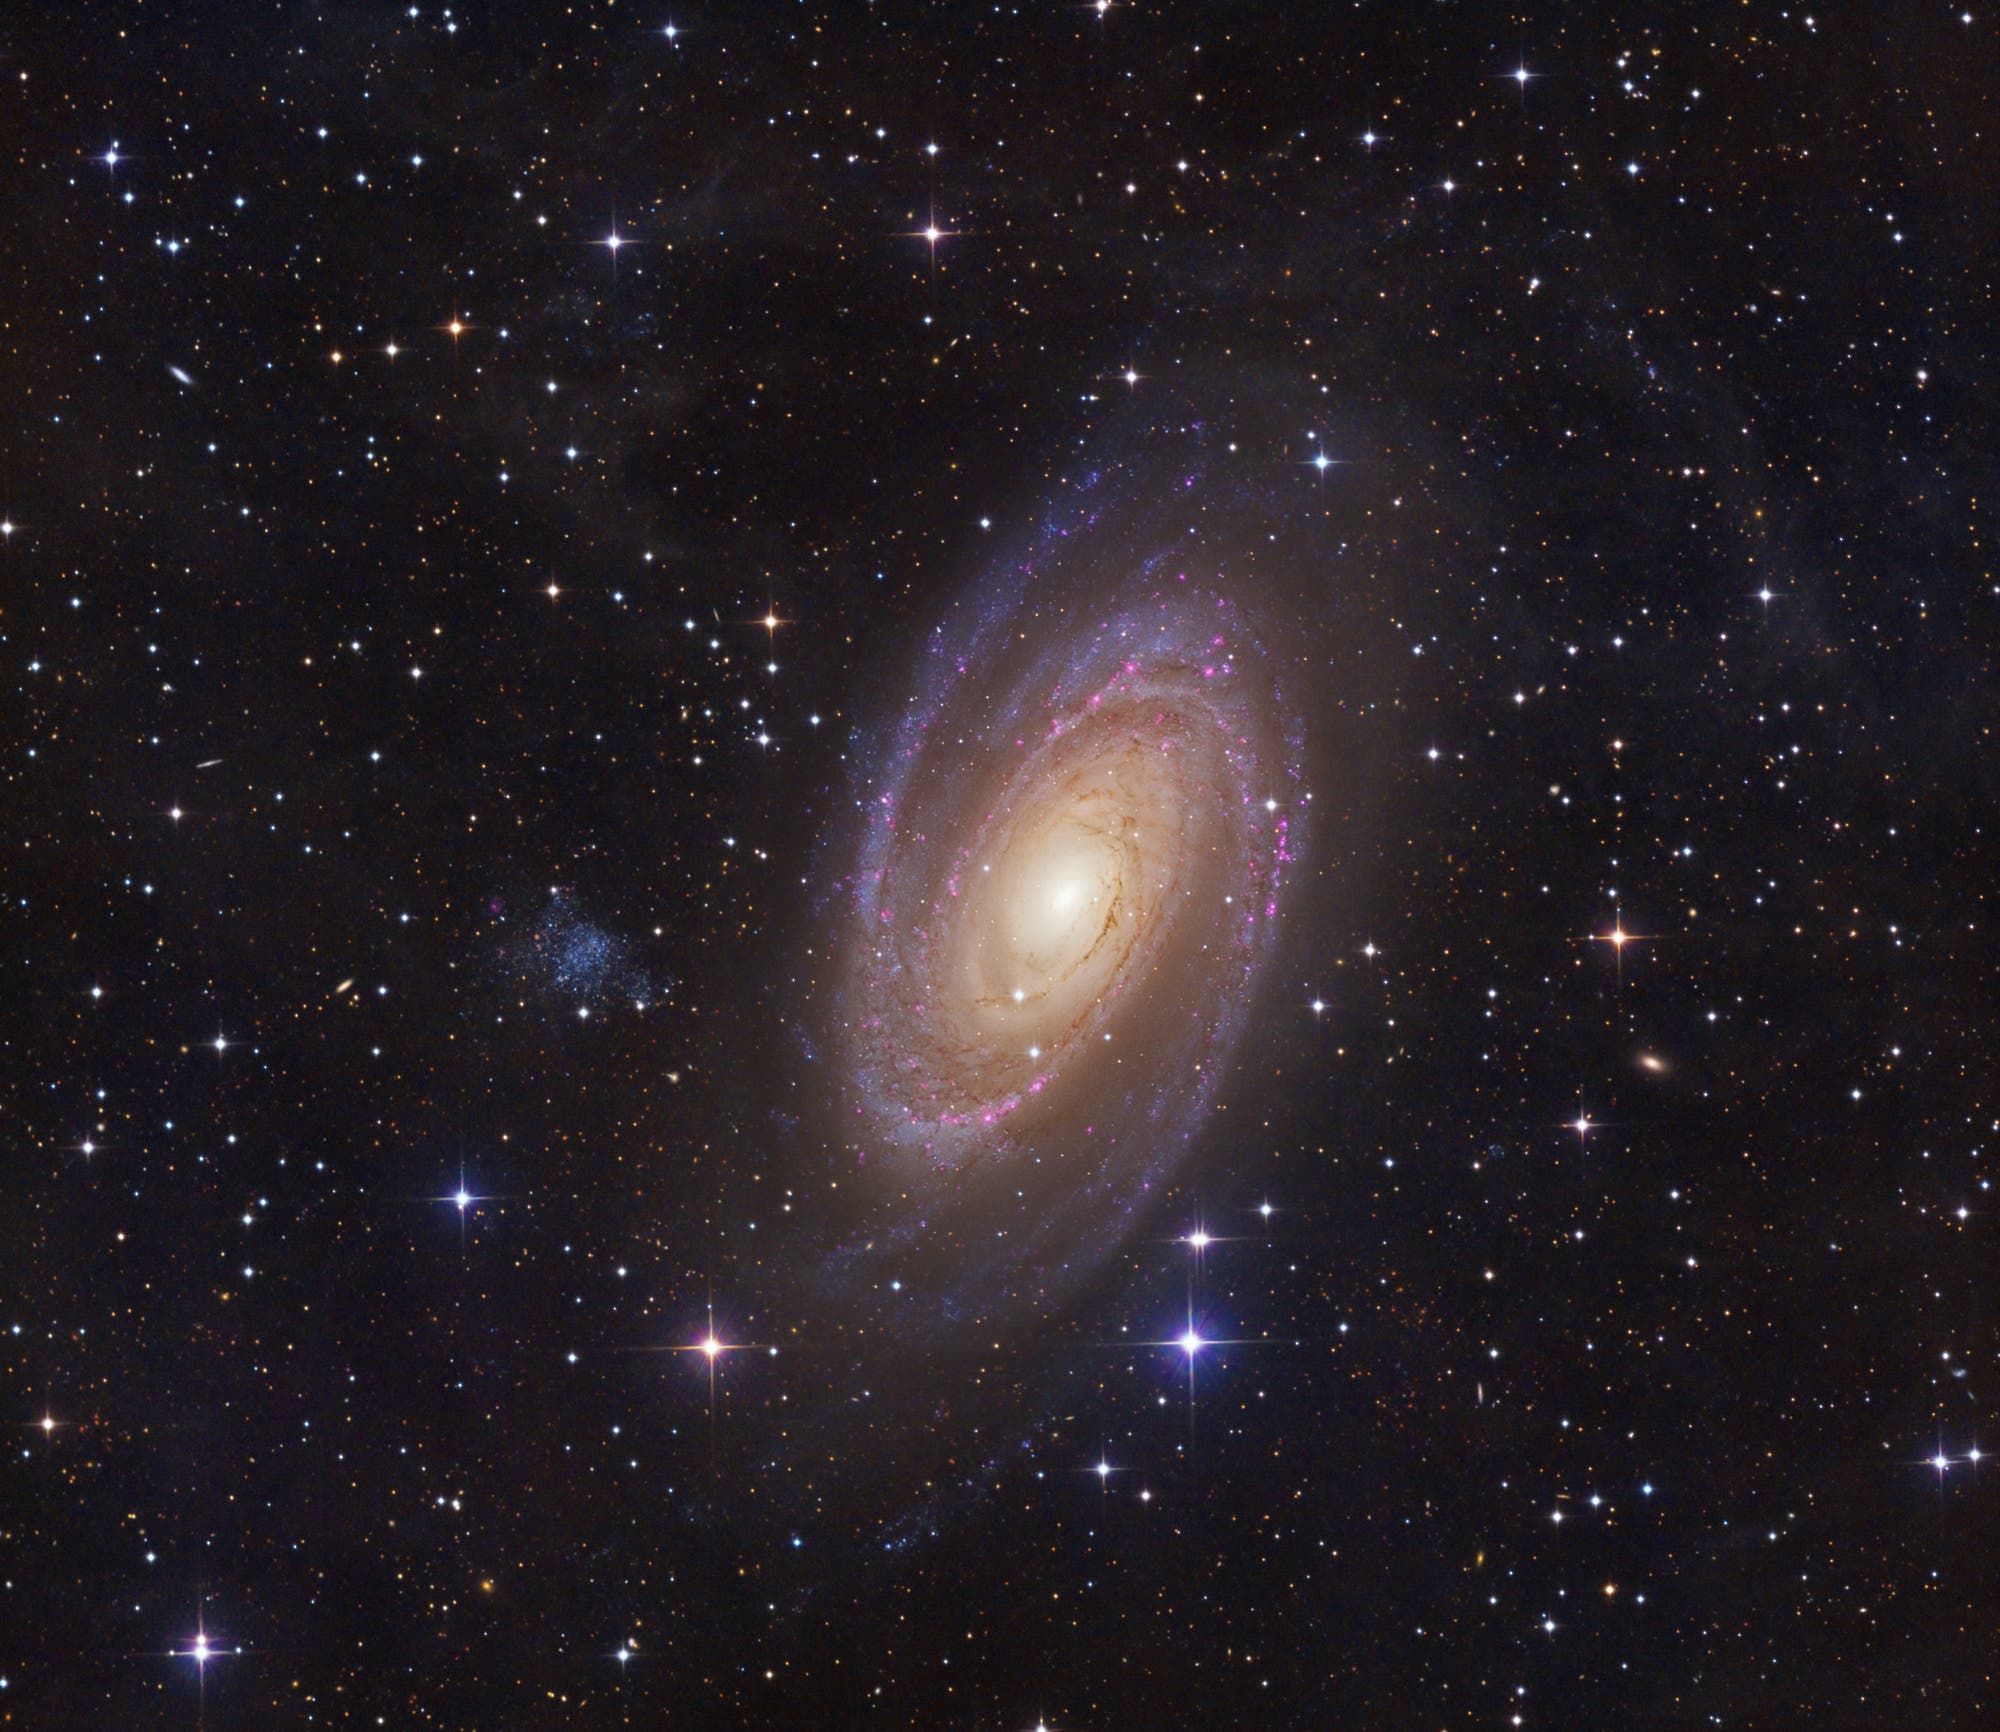 Messier 81 